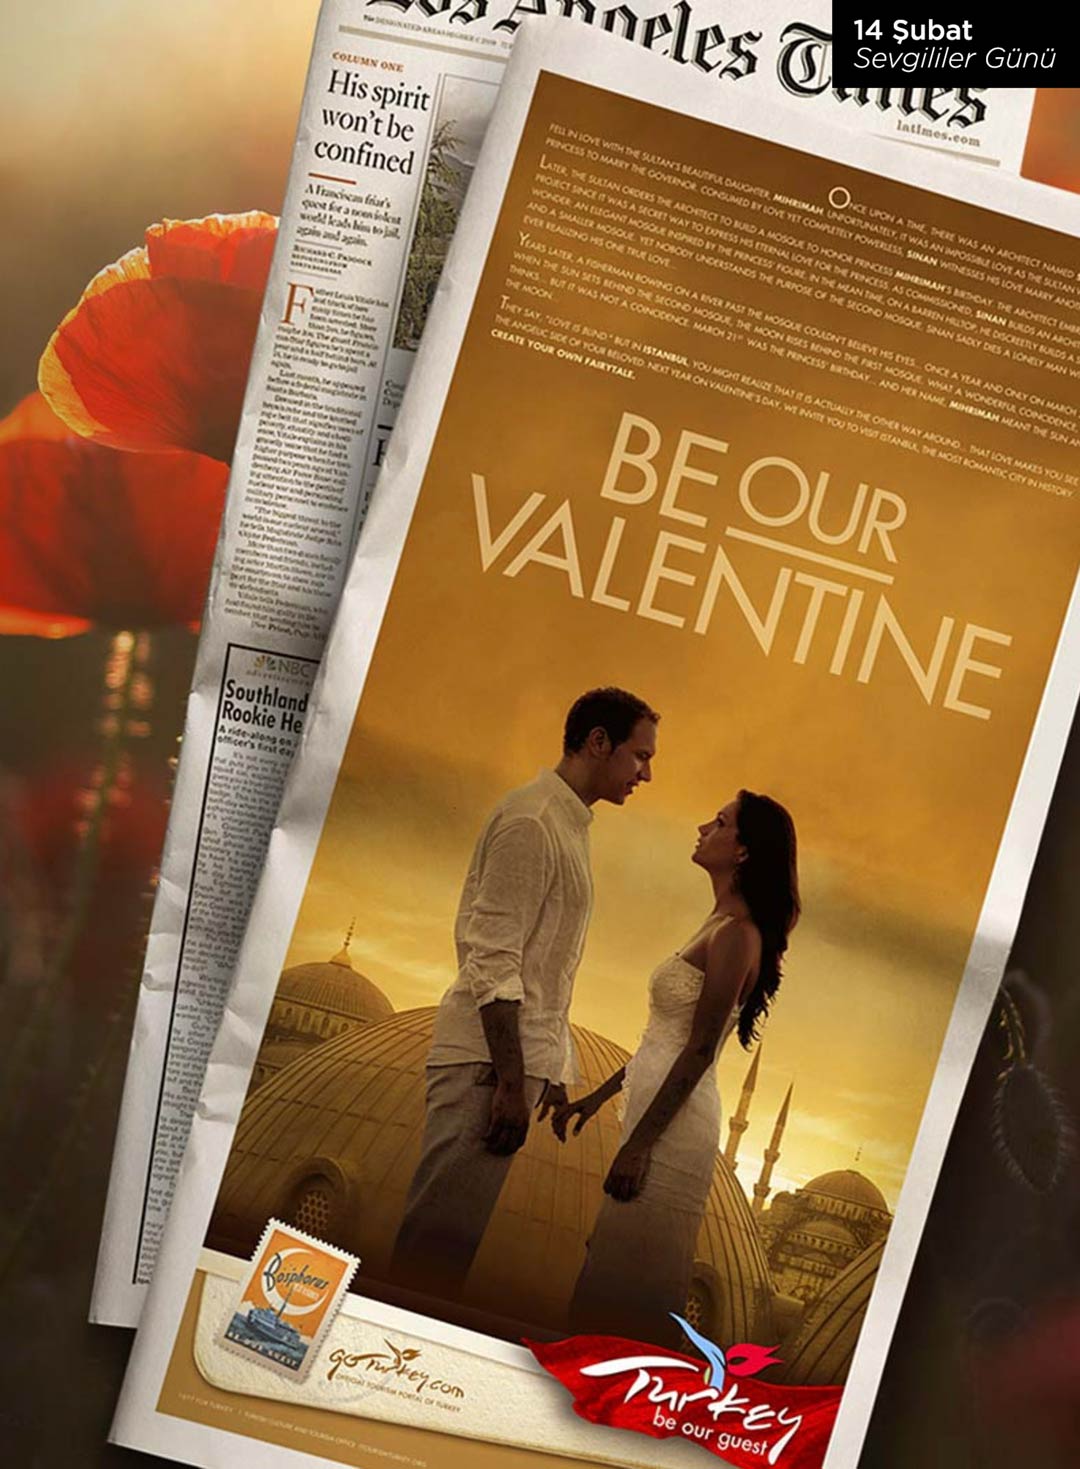 Türkiye turizm tanıtım kampanyası, 14 Şubat Sevgililer Günü